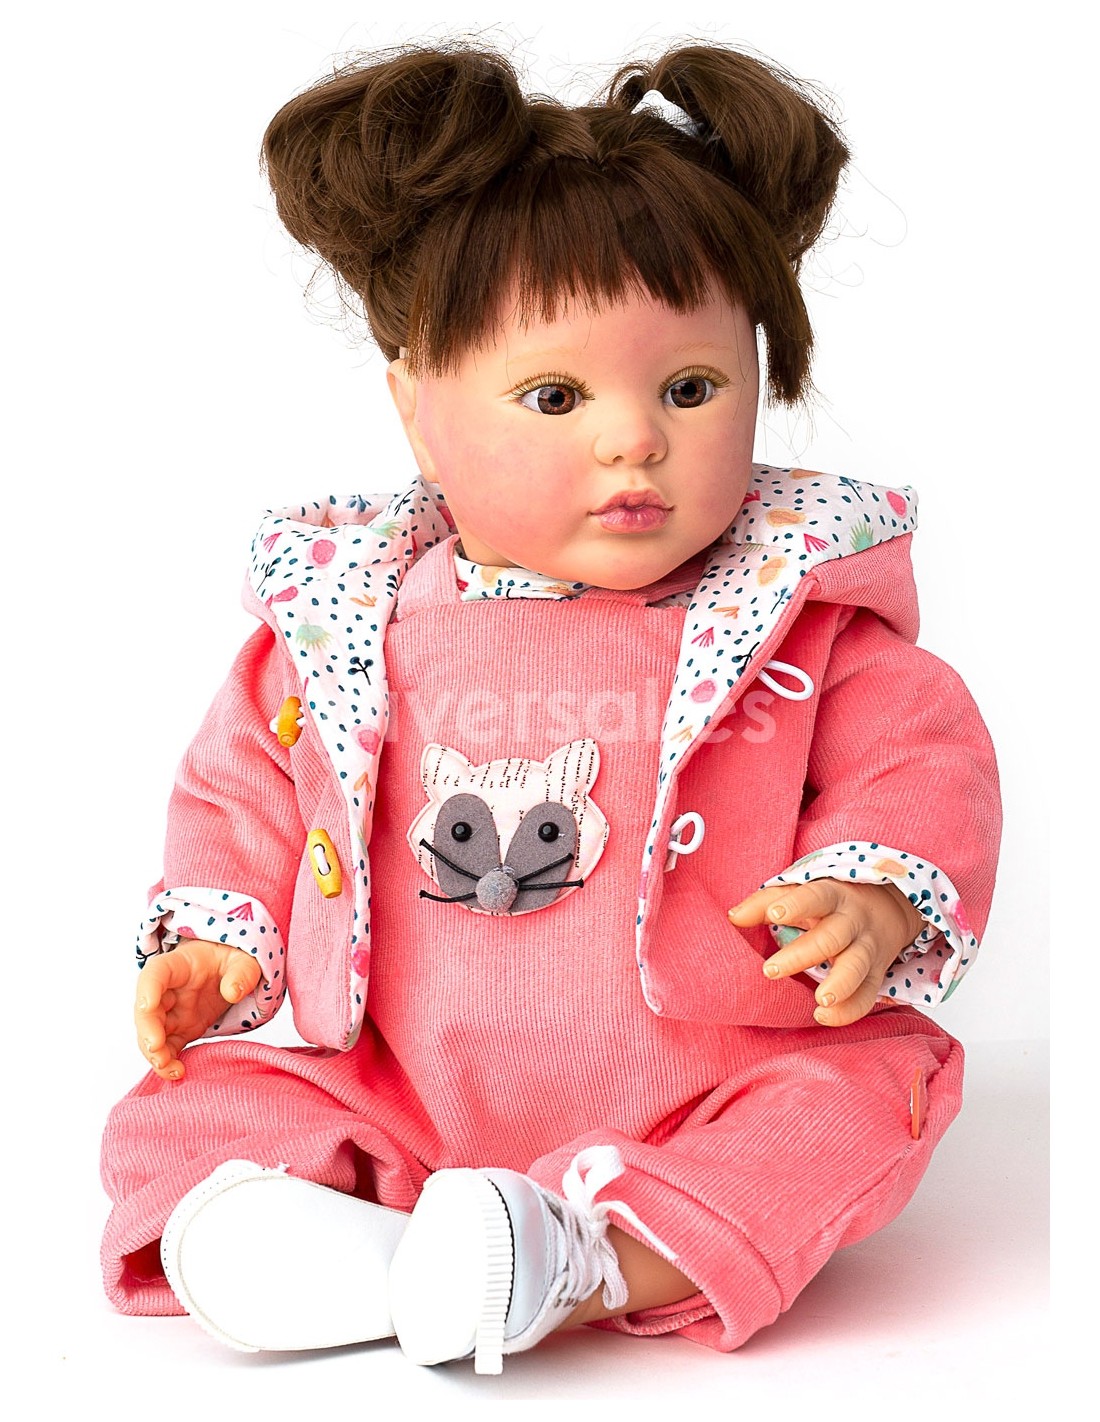 Bebe Reborn 48 CM - Diversal.es - Tienda de muñecas, juguetes y disfraces